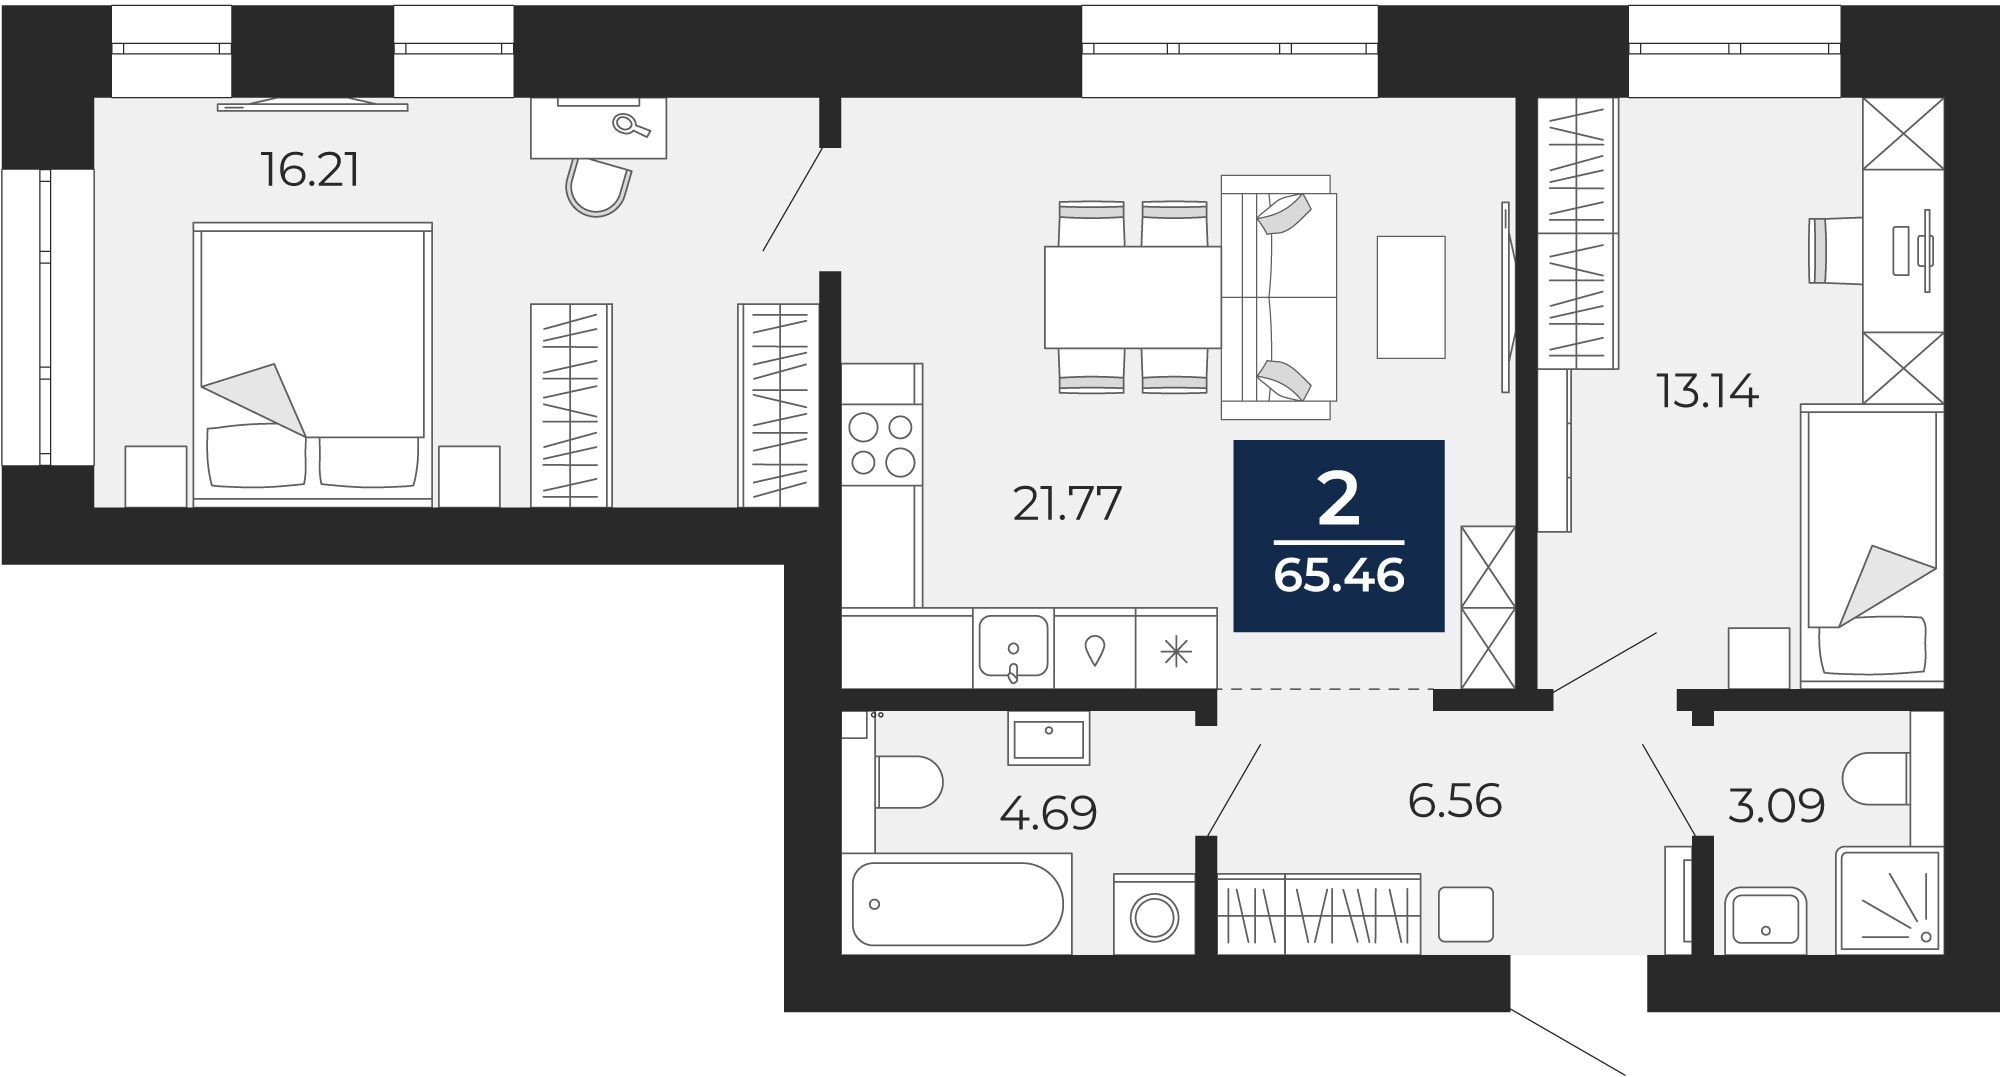 Квартира № 79, 2-комнатная, 65.46 кв. м, 6 этаж